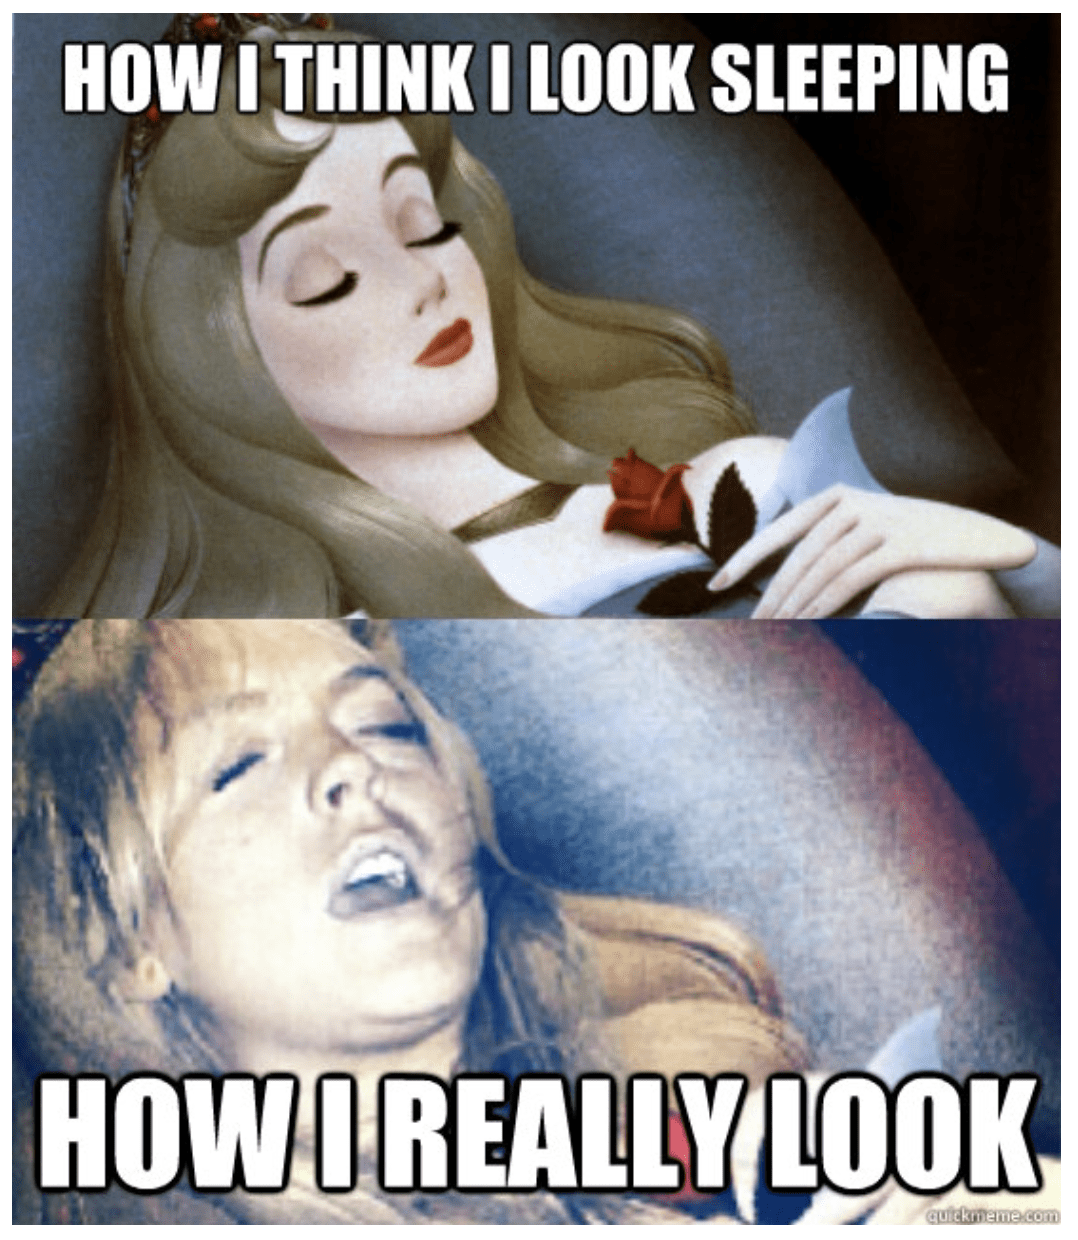 When do you sleep